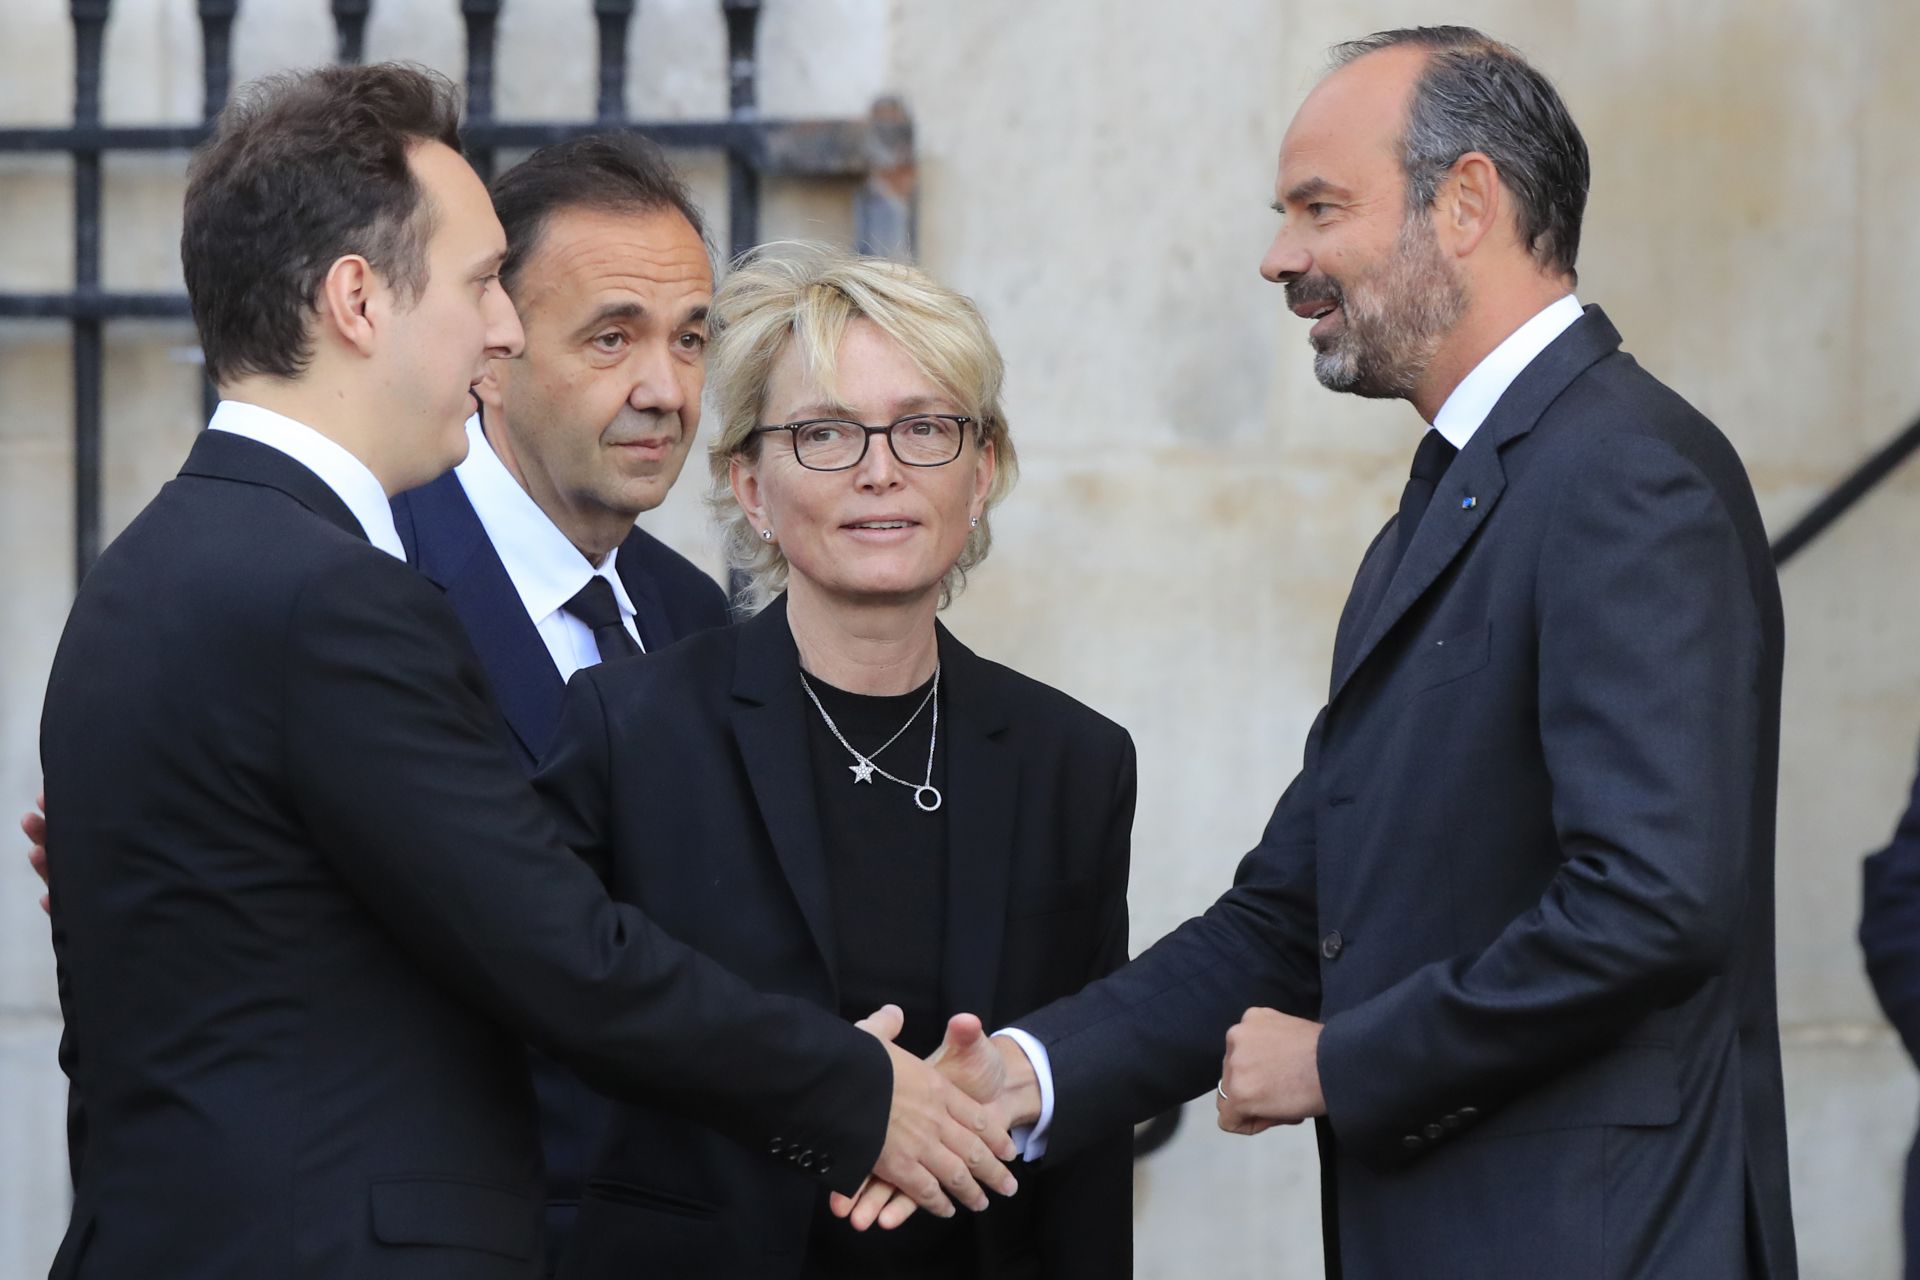 Френският министър-председател Едуар Филип, вдясно, поздравява Мартин Рей-Ширак ( вляво) и Клод Ширак -  син и дъщеря на бившия президент Жак Ширак пред църквата 